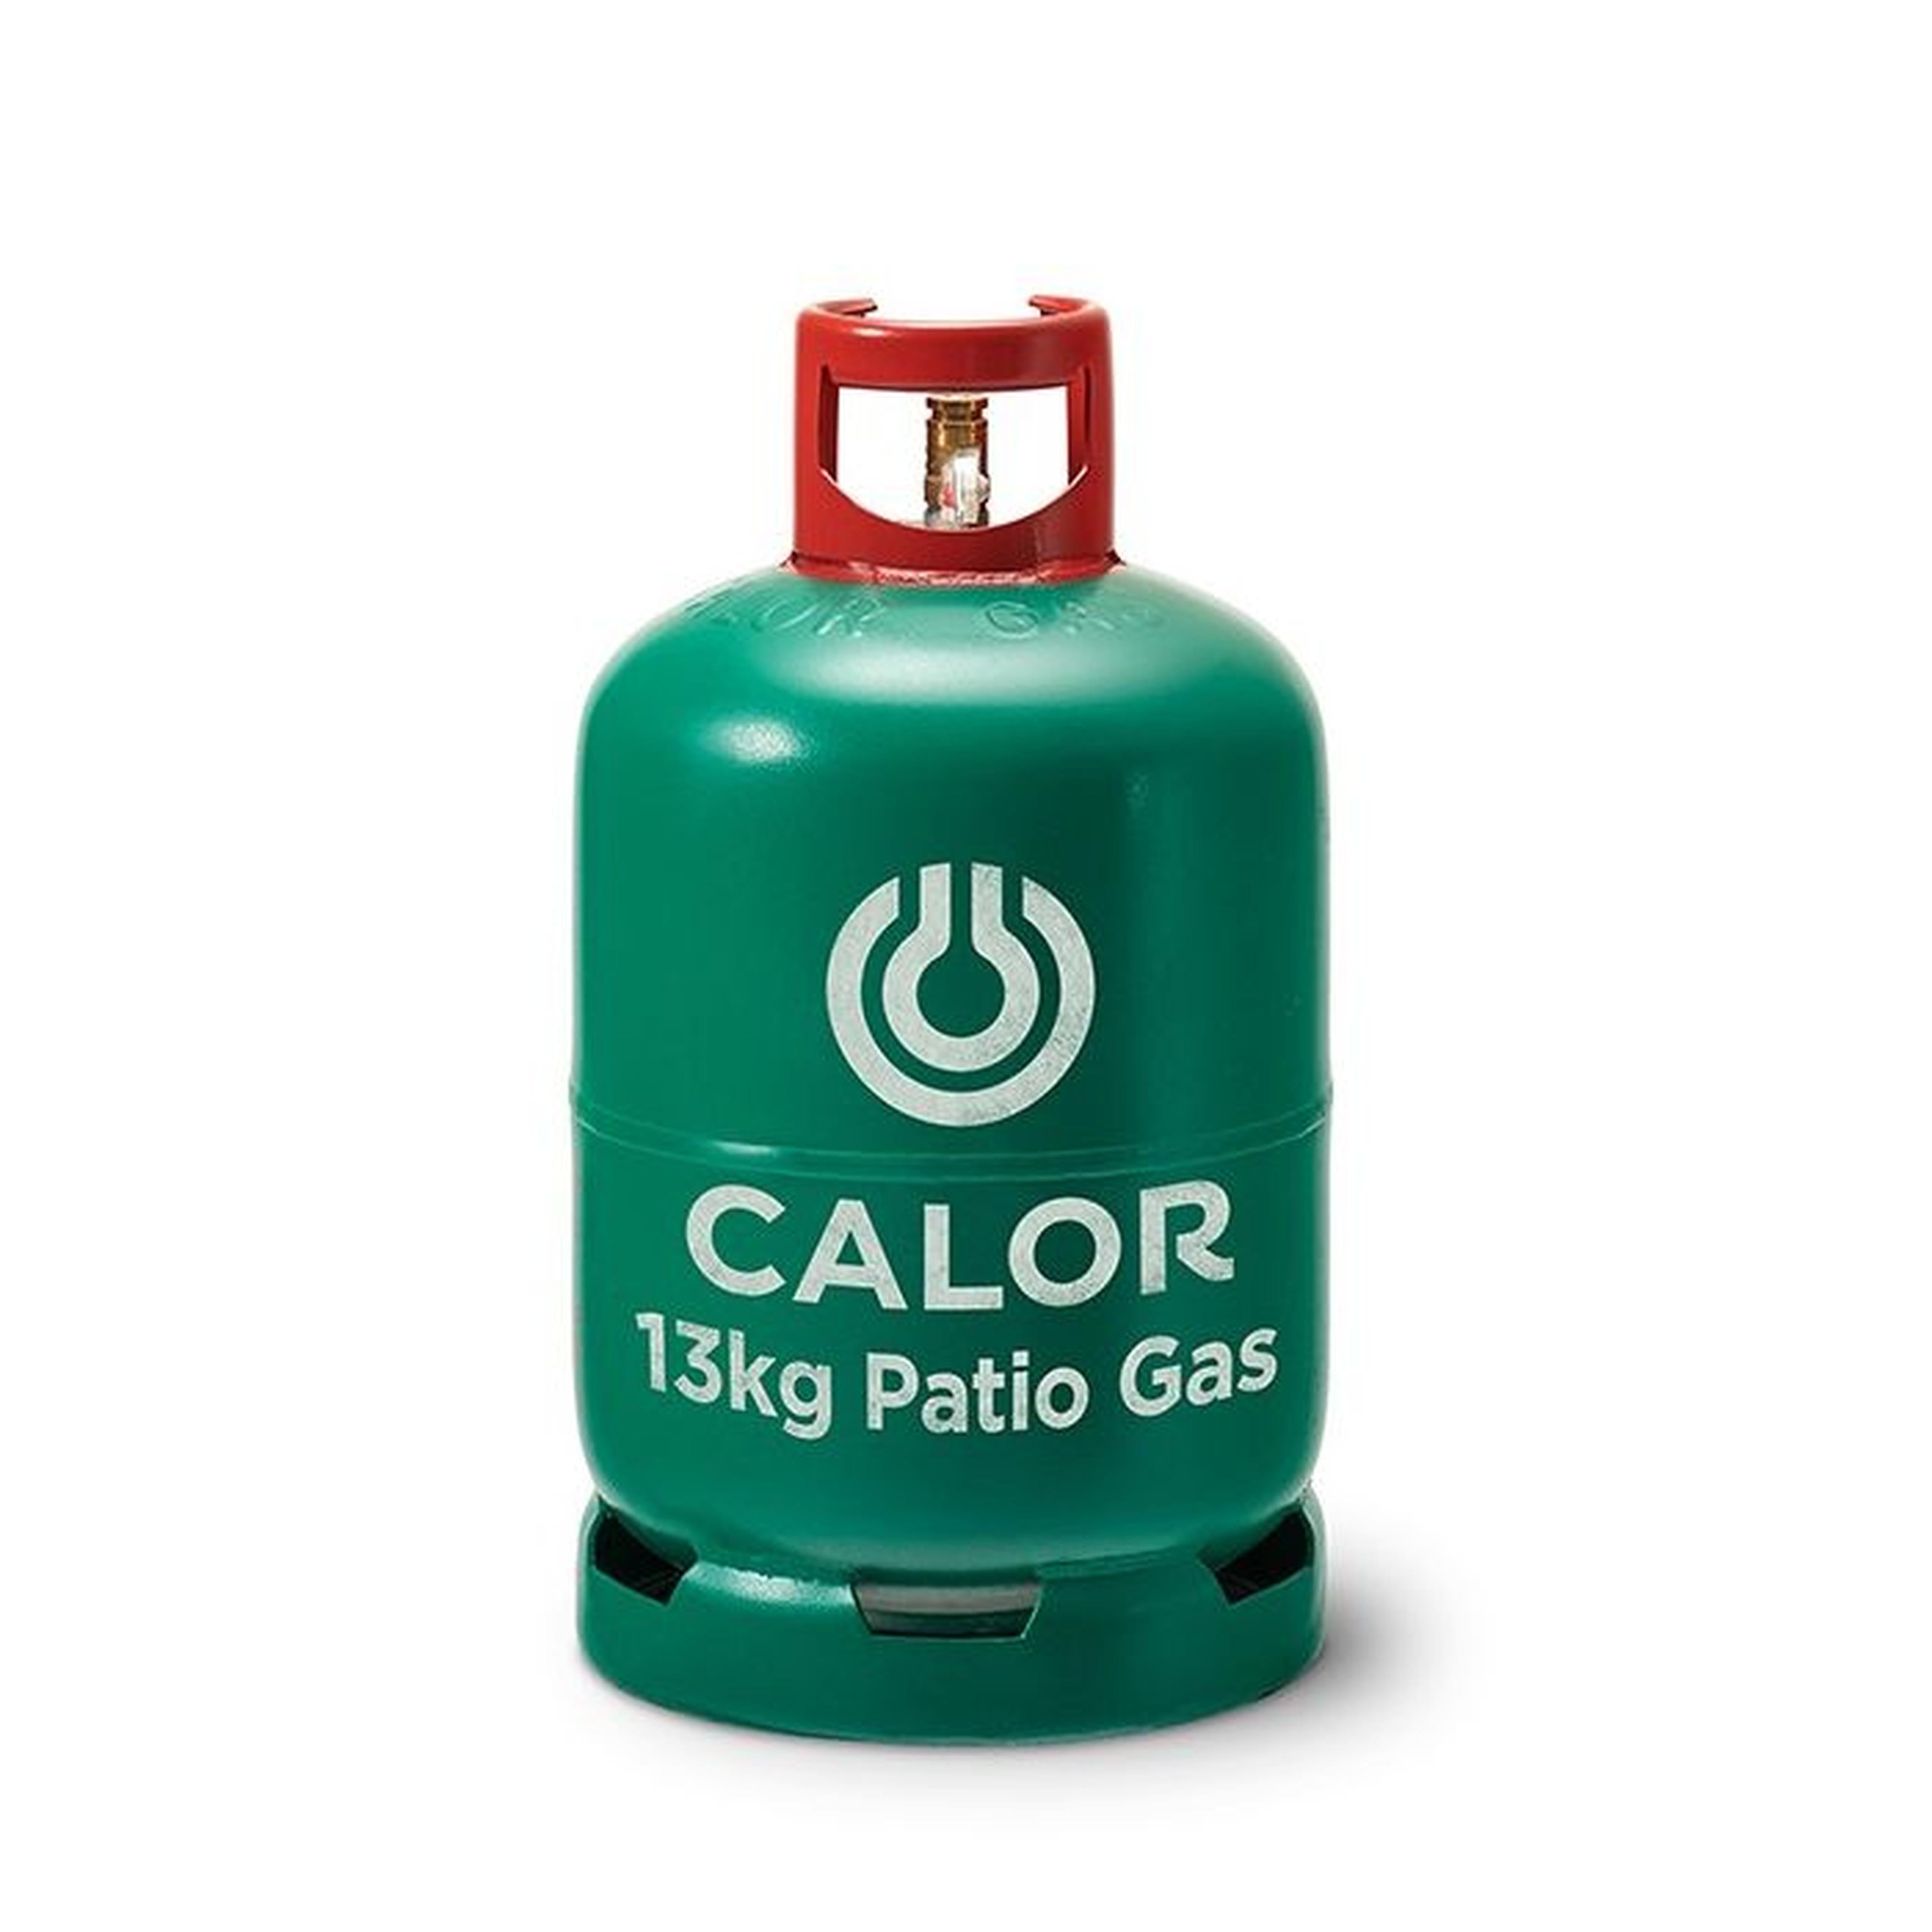 CALOR GAS 13KG PATIO GAS CYLINDER